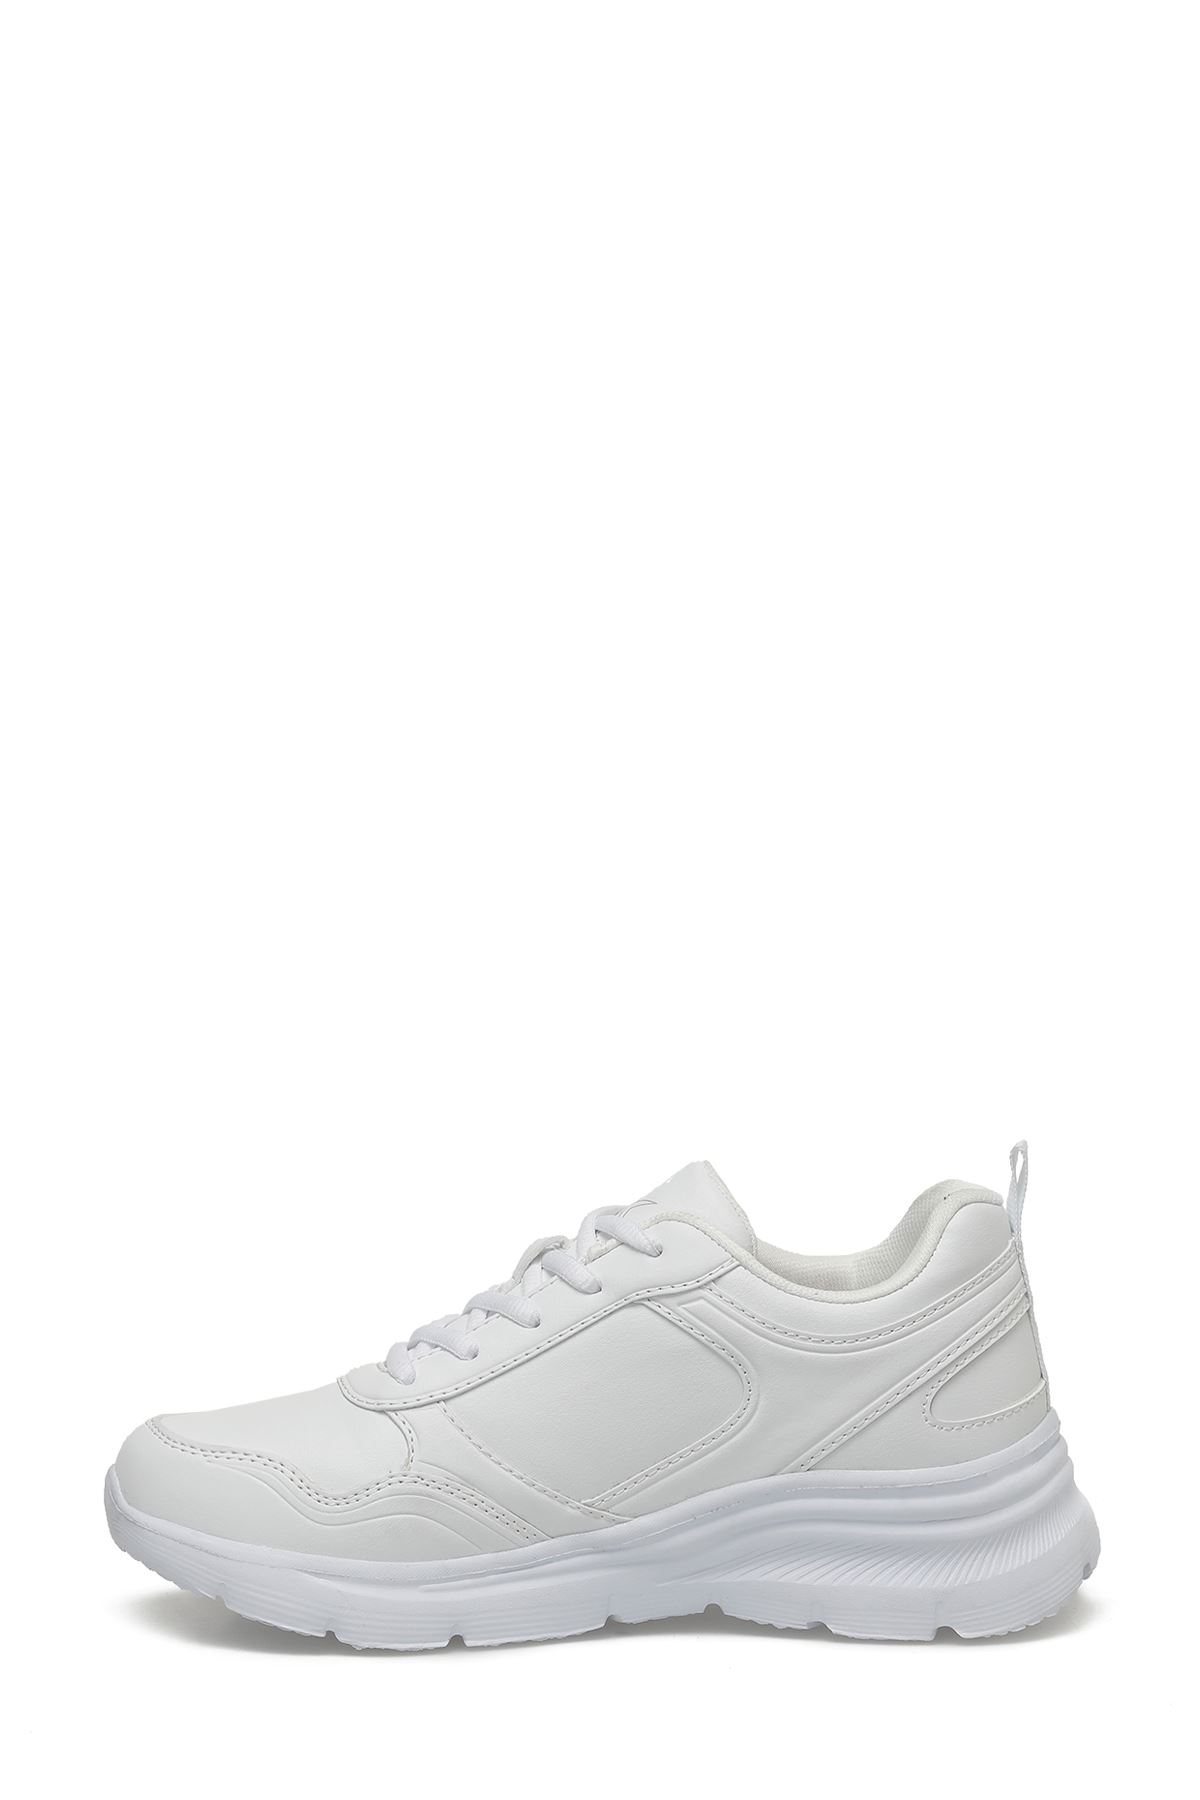 Suomy Pu W 4Fx Kinetıx Kadın Beyaz Spor Ayakkabı - 101487996